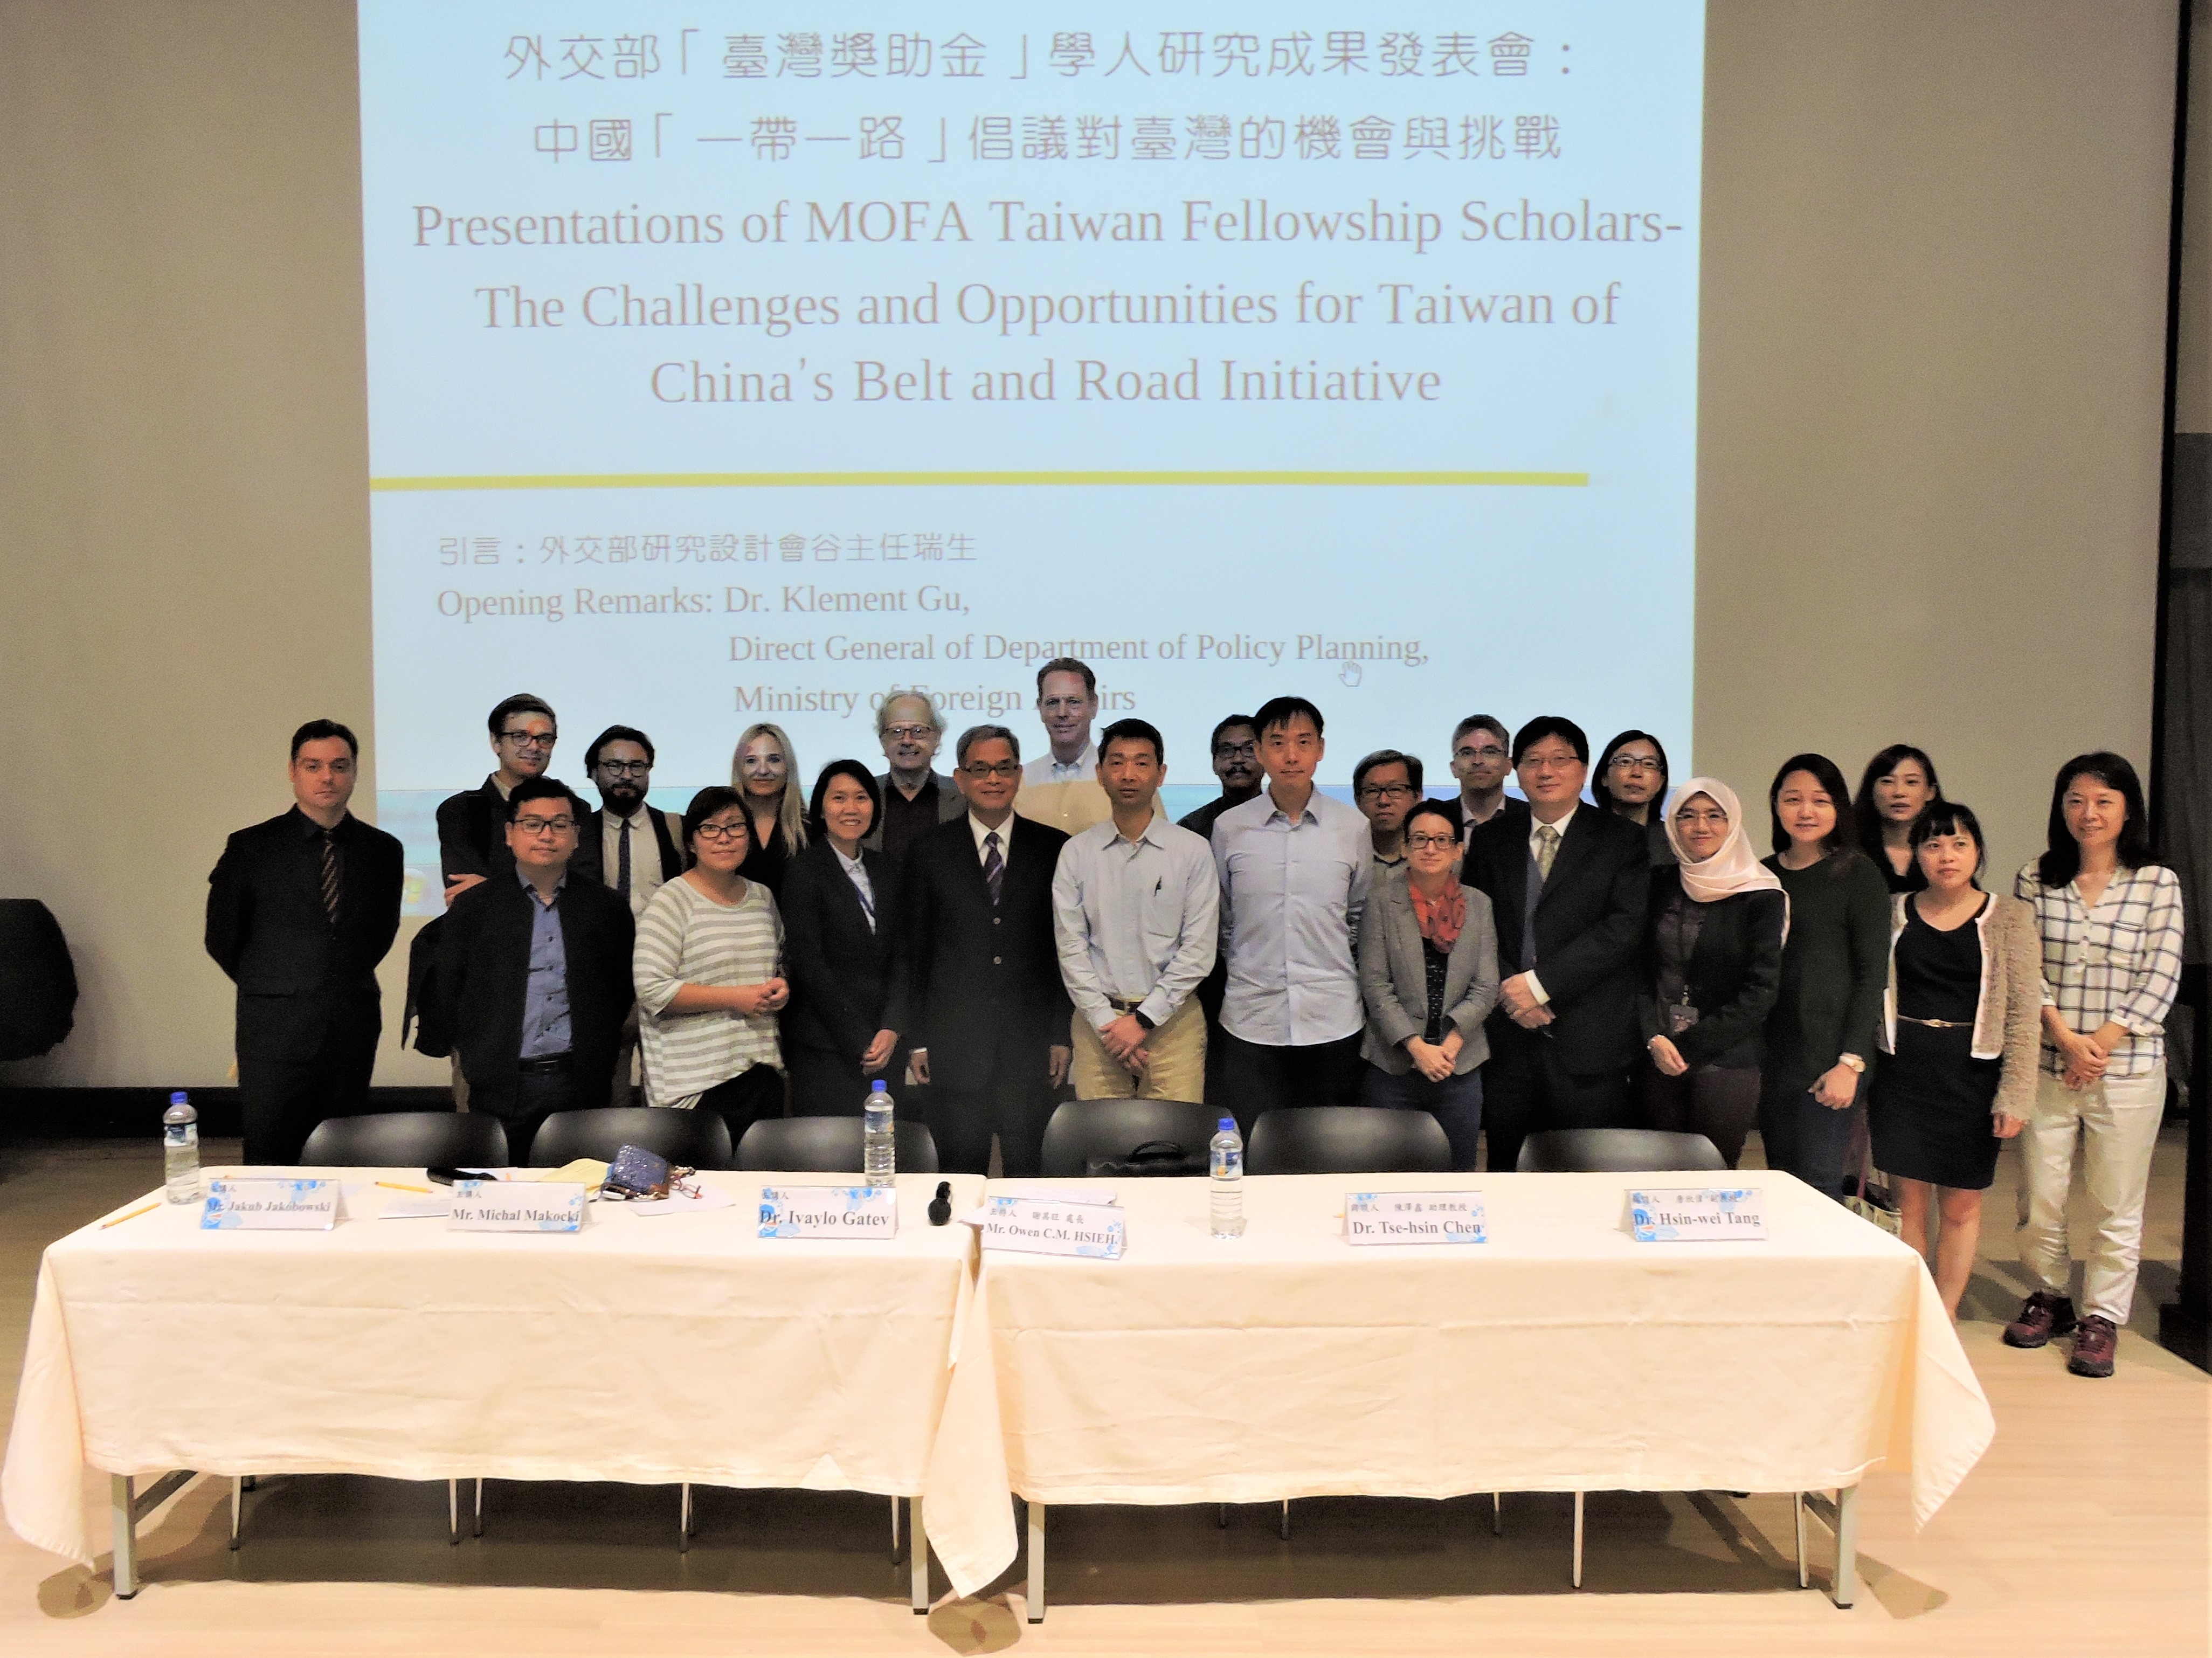 照片 2018 年臺灣獎助金第四次學人研究成果發表會在北大：中國「一帶一路」倡議對臺灣的機會與挑戰